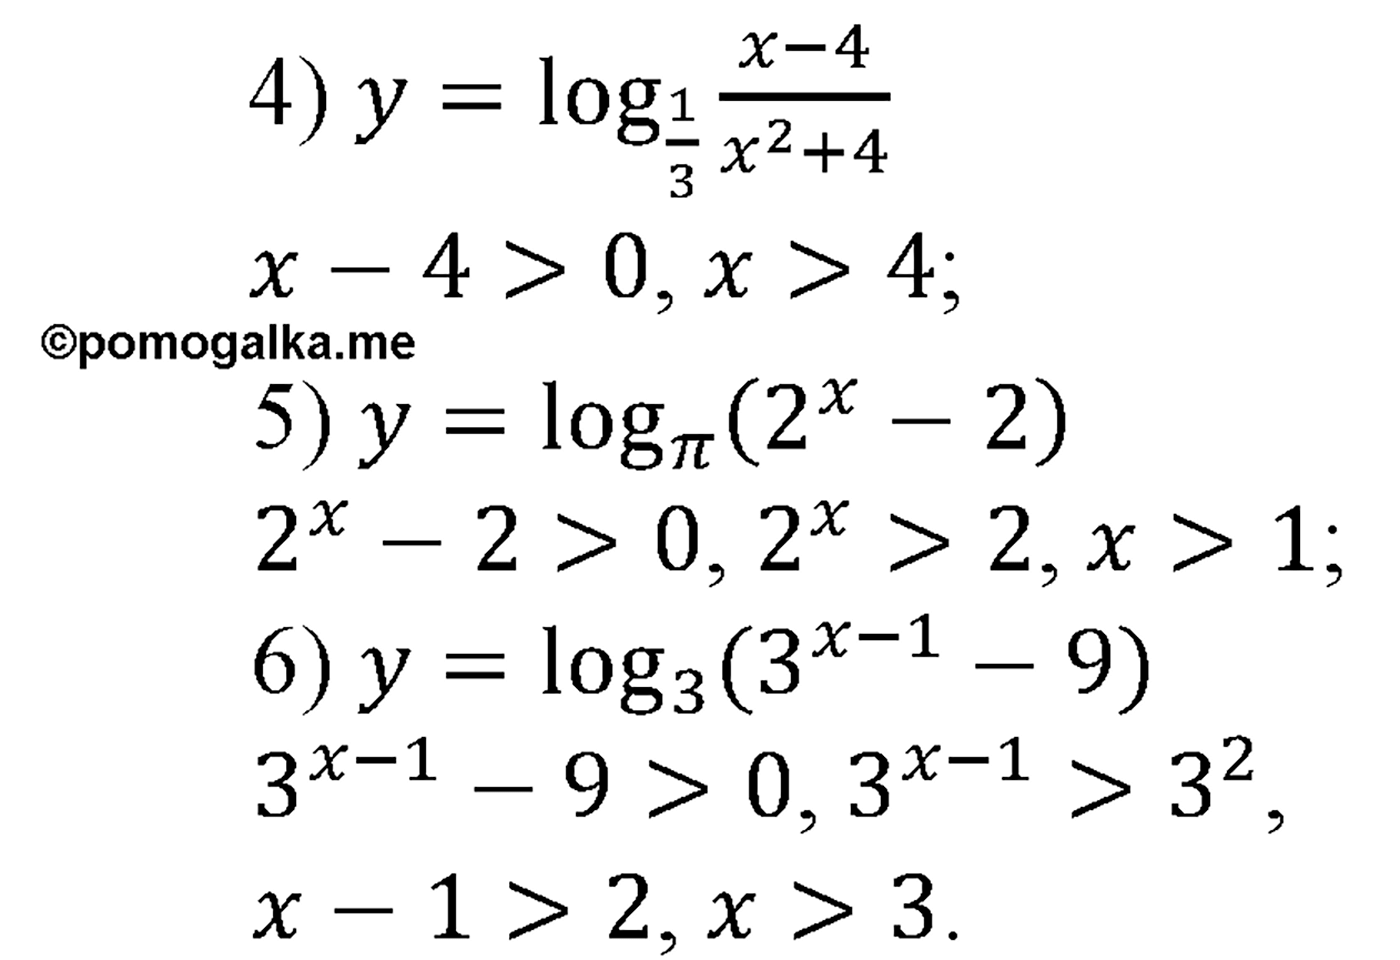 разбор задачи №331 по алгебре за 10-11 класс из учебника Алимова, Колягина